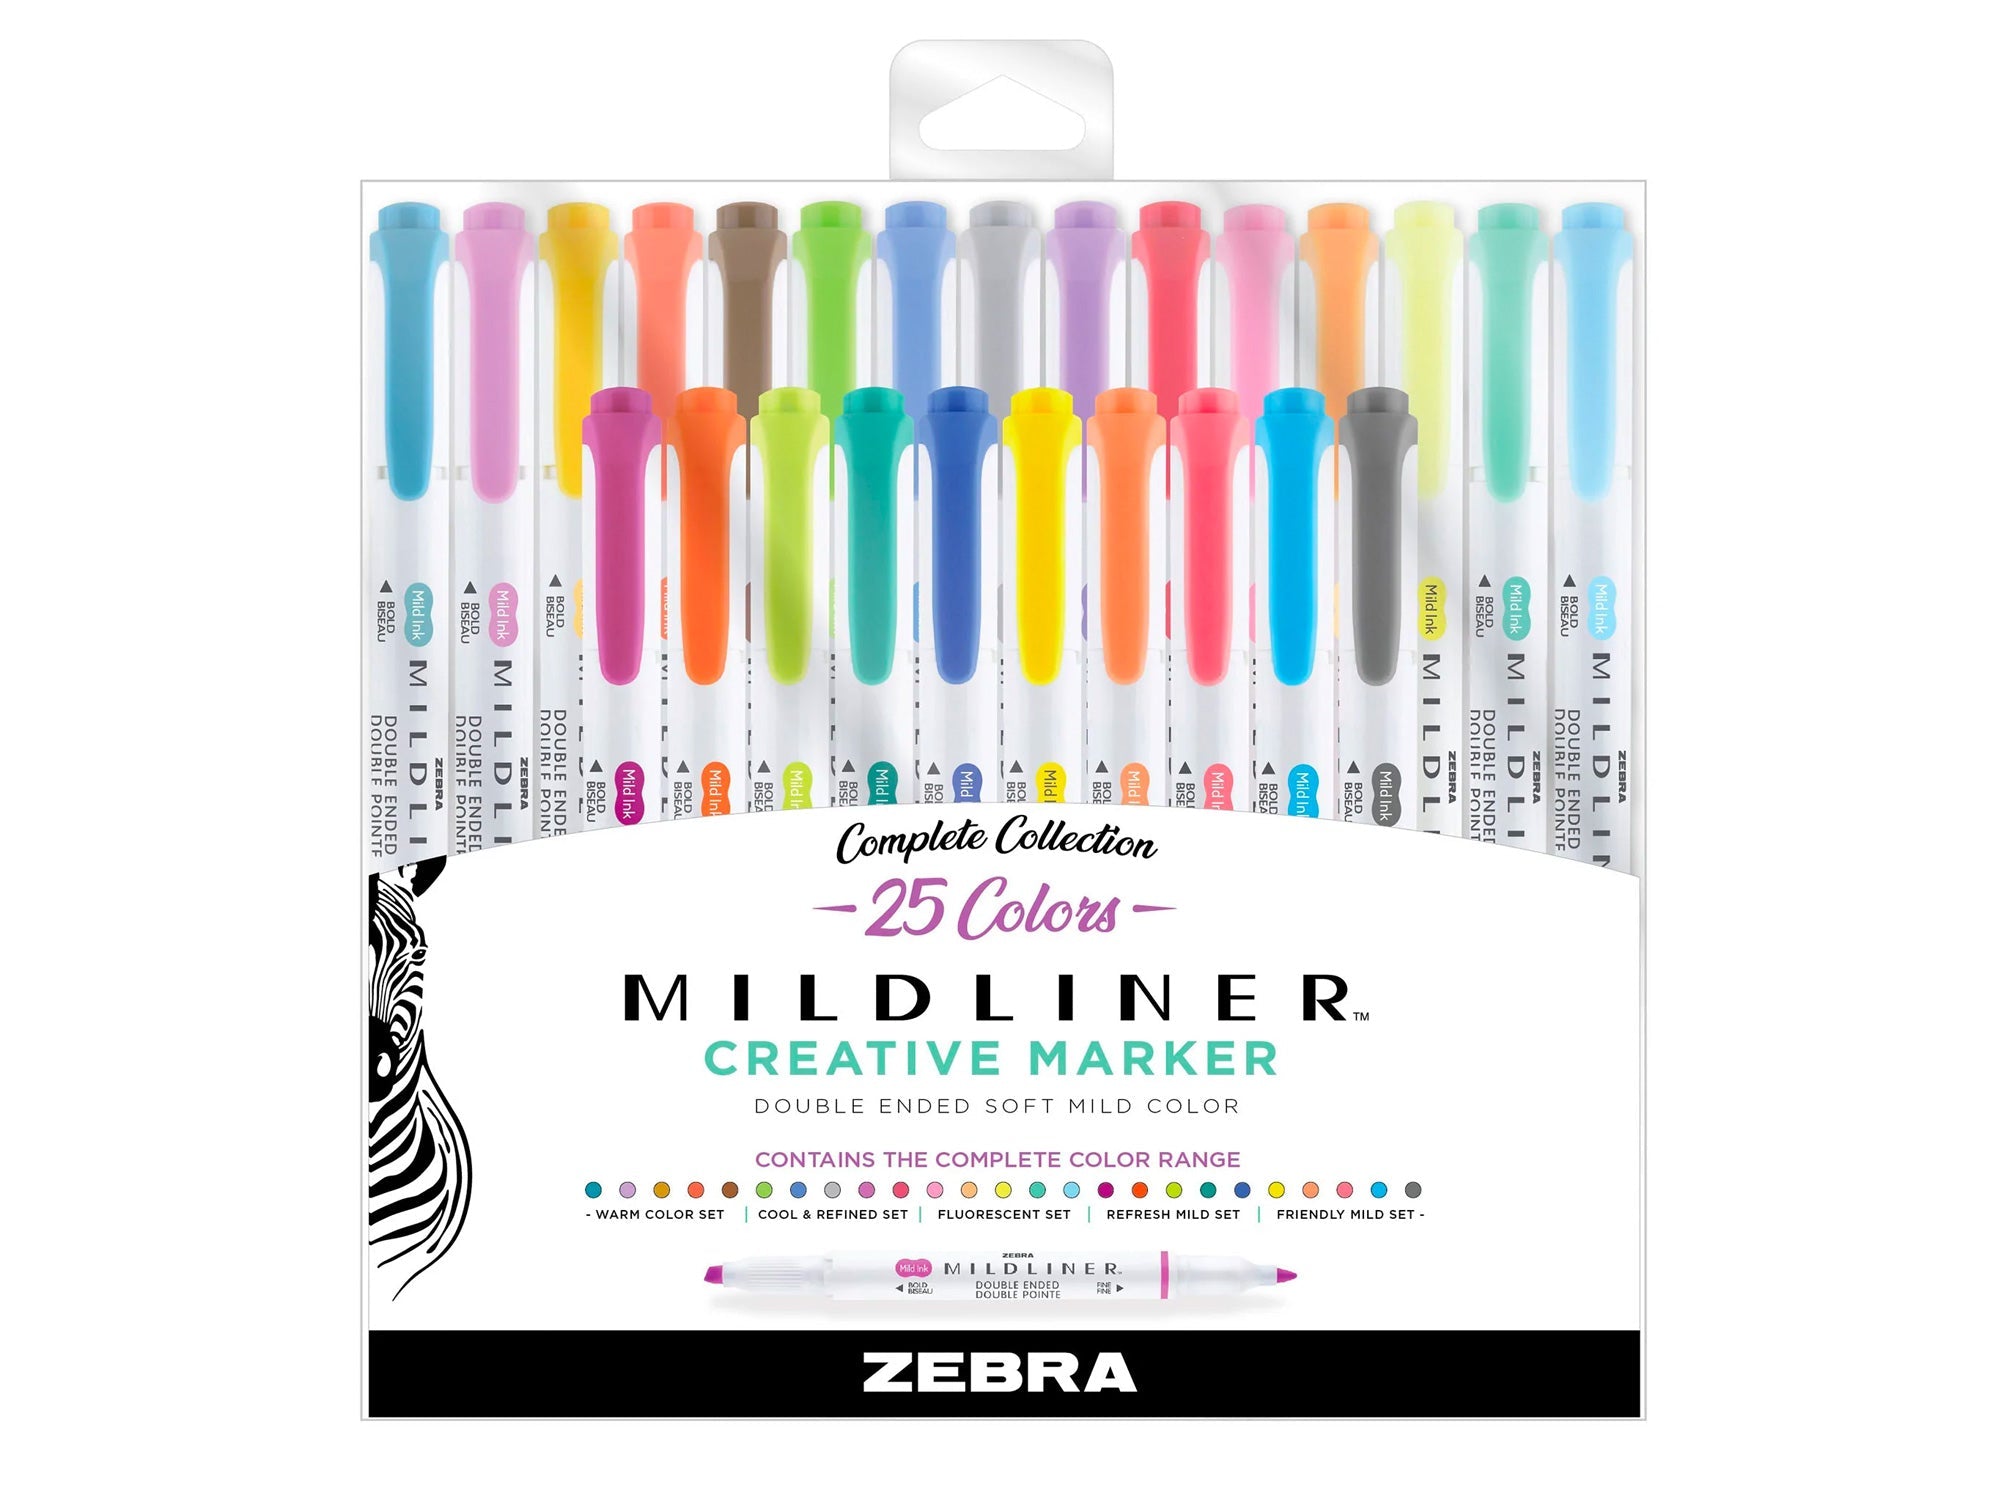 Zebra Mildliner Double-Ended Brush Pen- Complete Set of 25